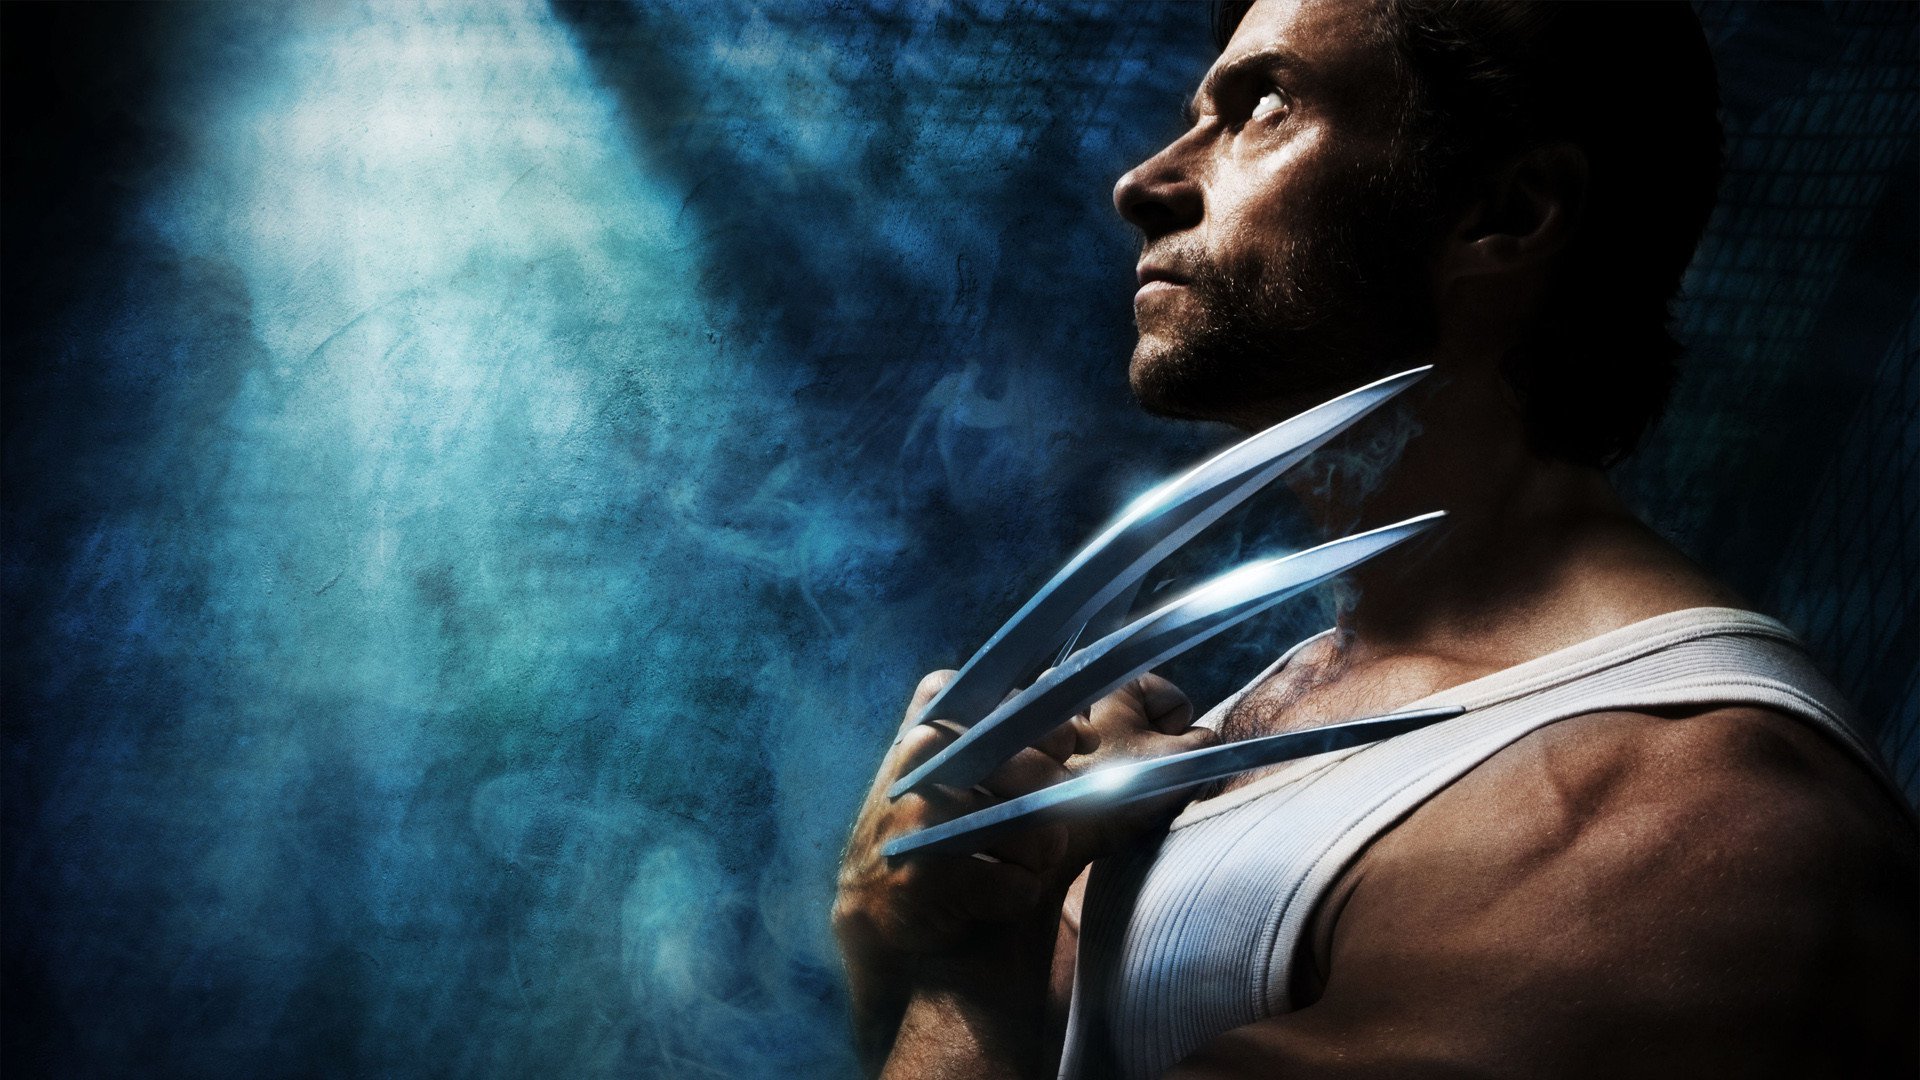 Movie X-Men Origins: Wolverine HD Wallpaper | Background Image